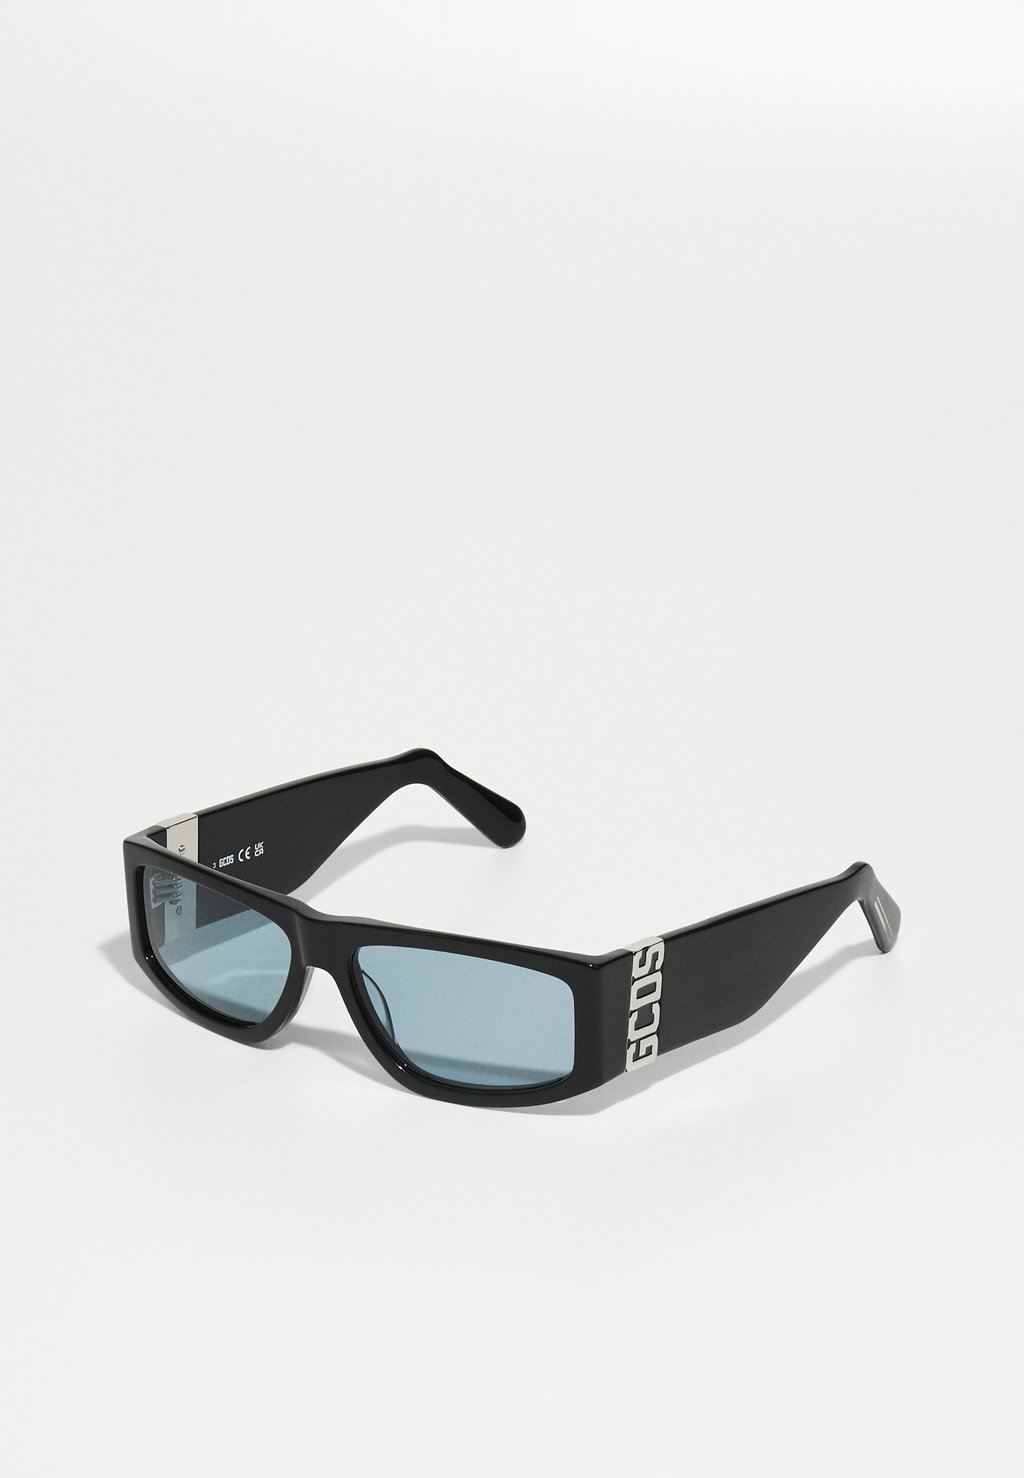 Солнцезащитные очки Unisex GCDS, цвет shiny black солнцезащитные очки gcds белый